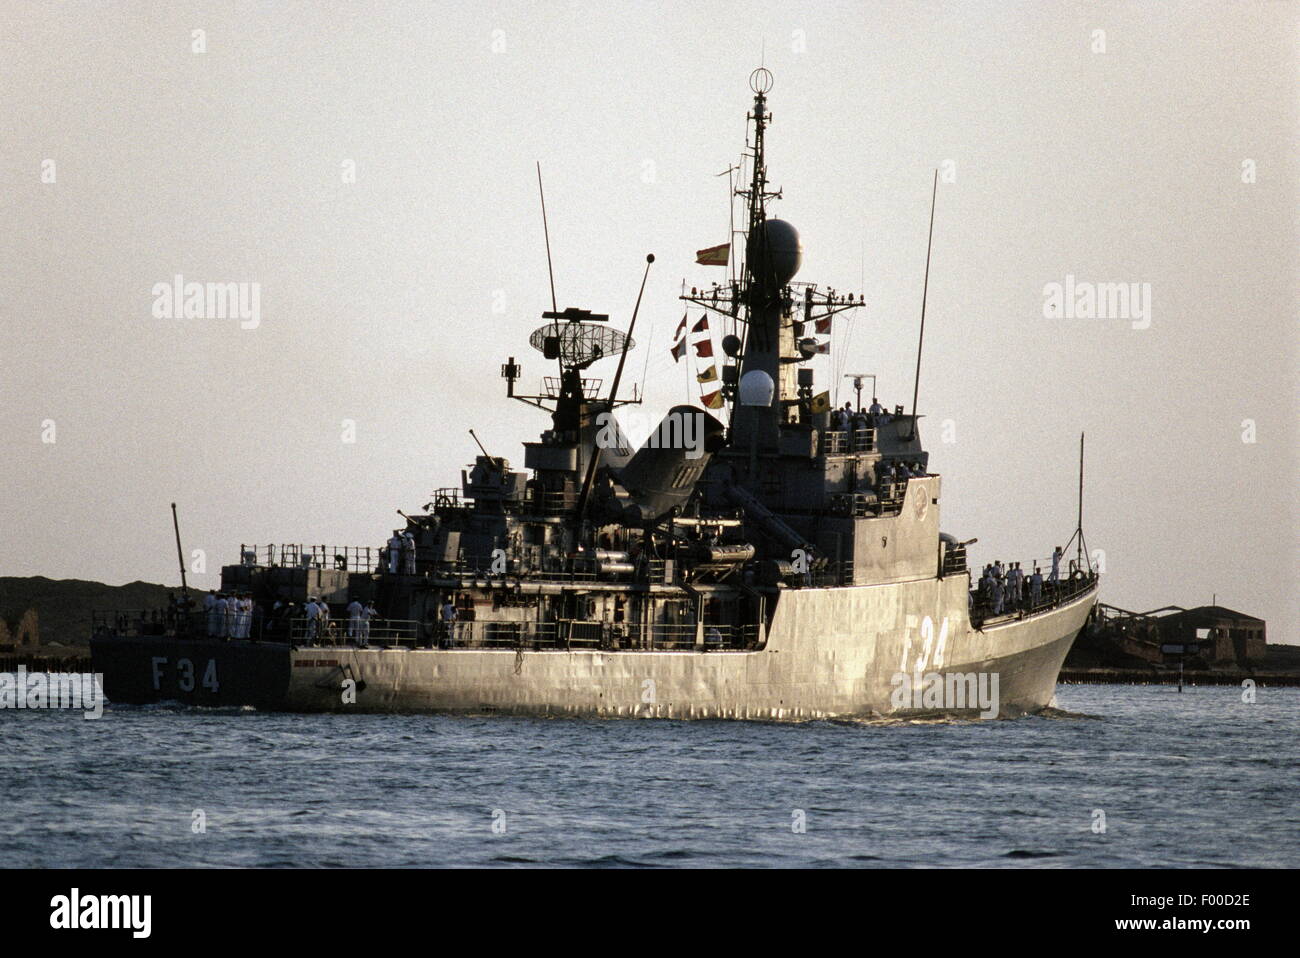 Canal de Suez, Egypte -- 1989 -- un navire de guerre de la marine espagnole en direction de devoir dans le golfe Persique le transit du canal de Suez. Banque D'Images